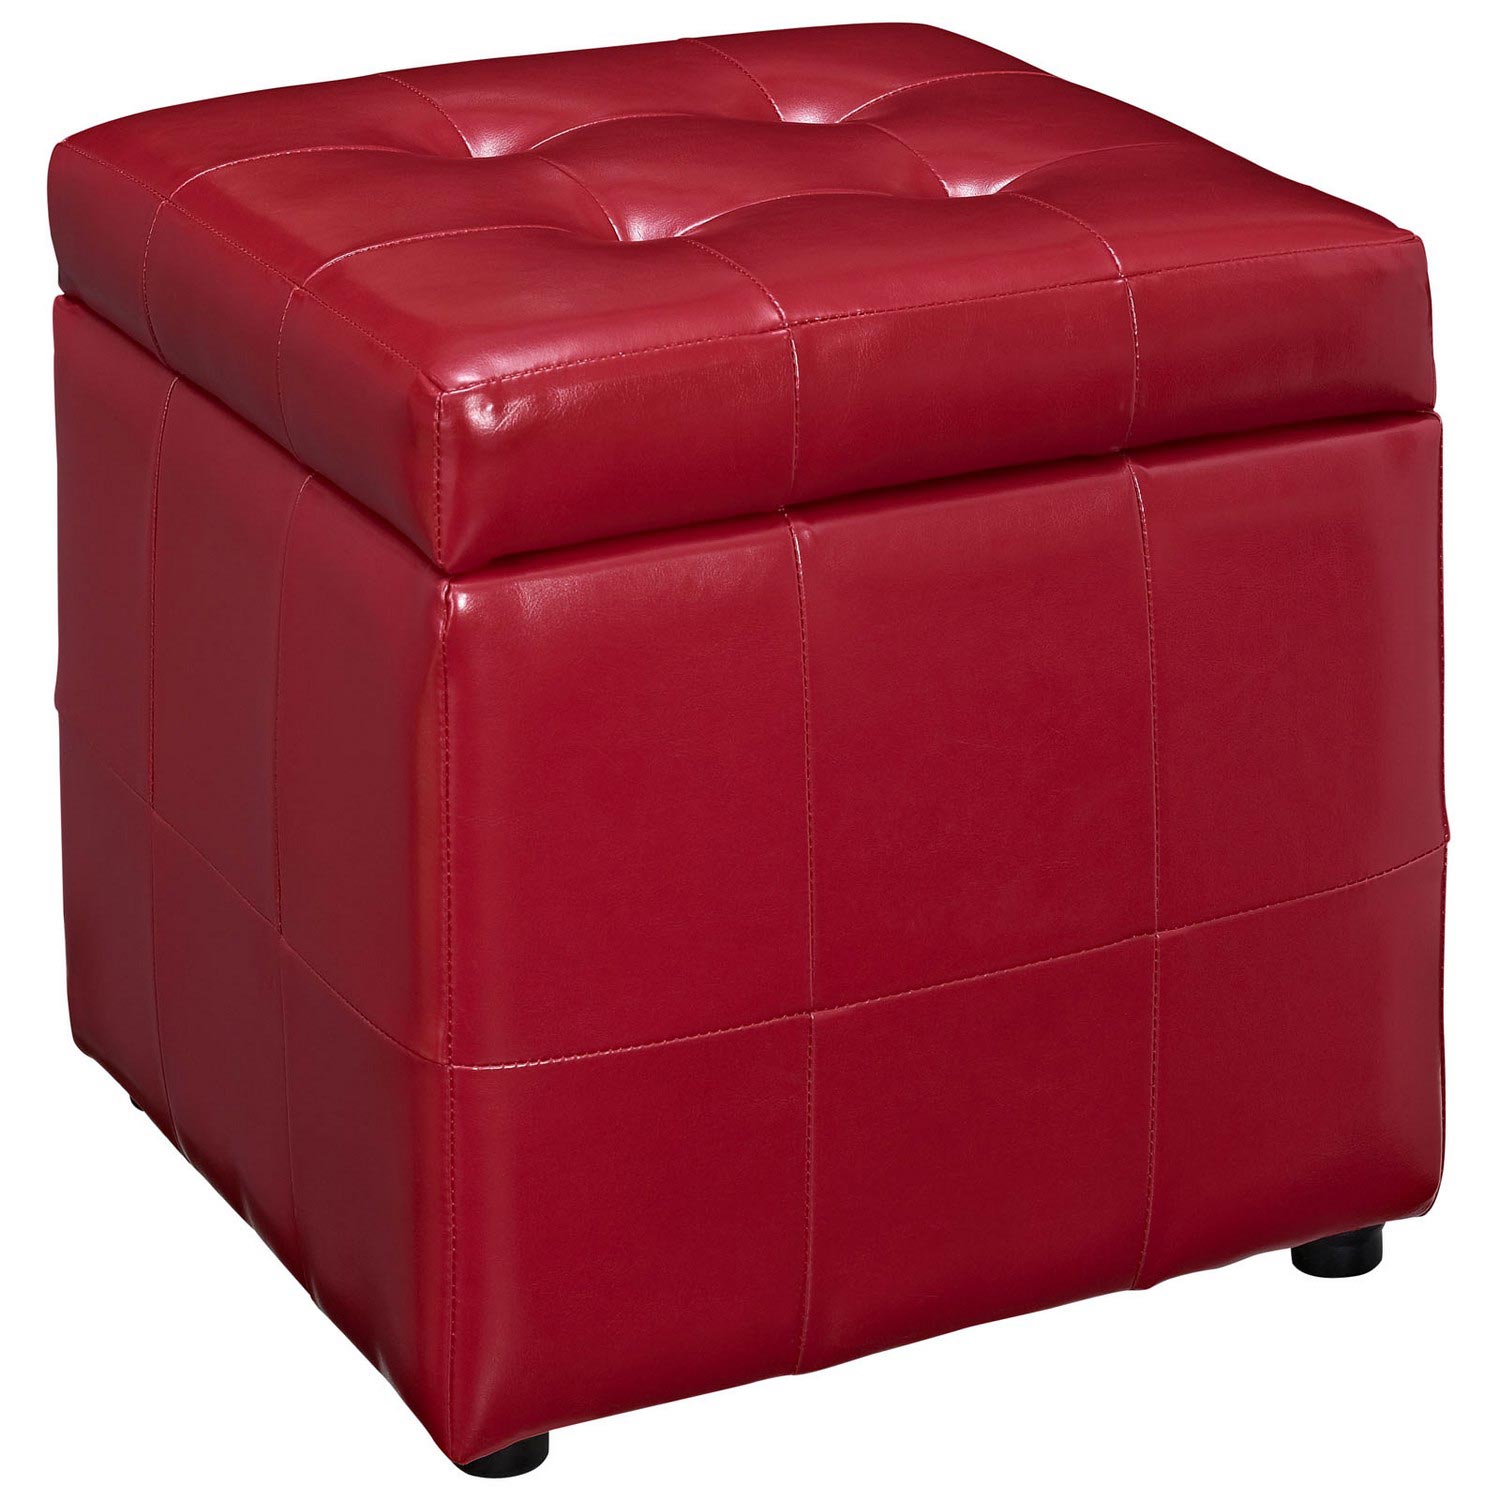 Modway Volt Storage Ottoman - Red